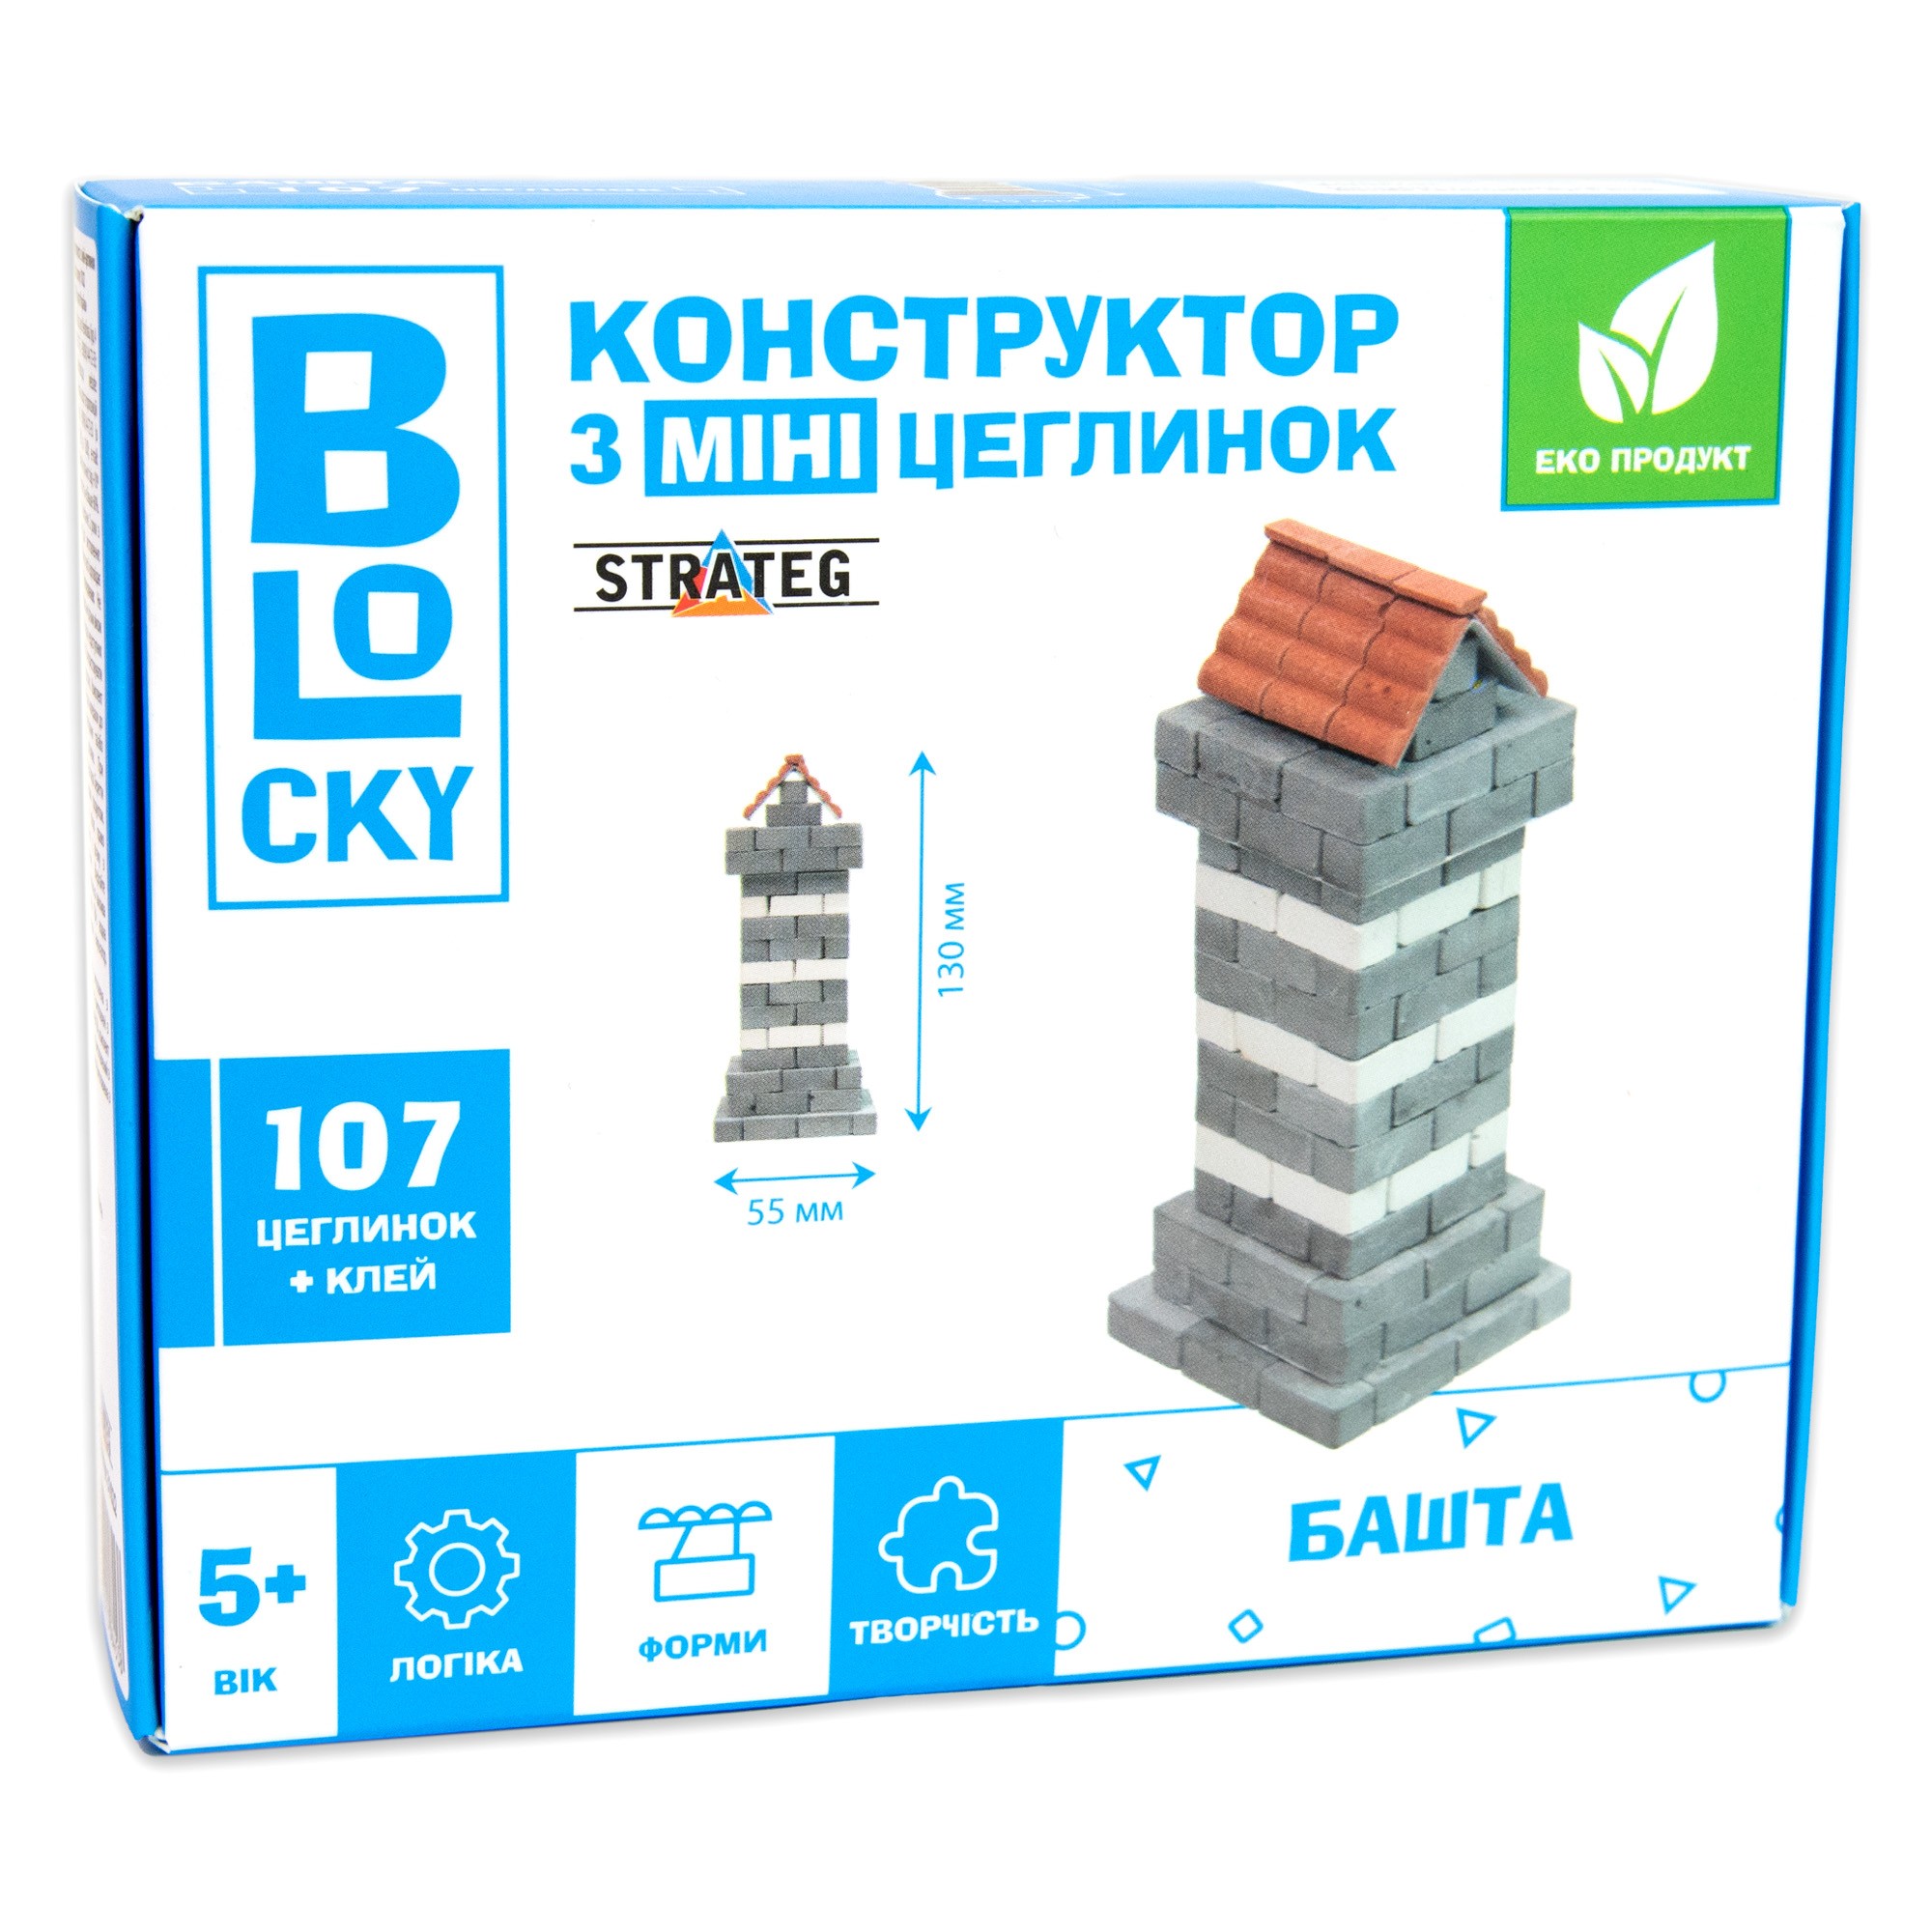 Будівельний набір для творчості "Башта" (з міні-цеглинок), бренду Strateg - KUBIX